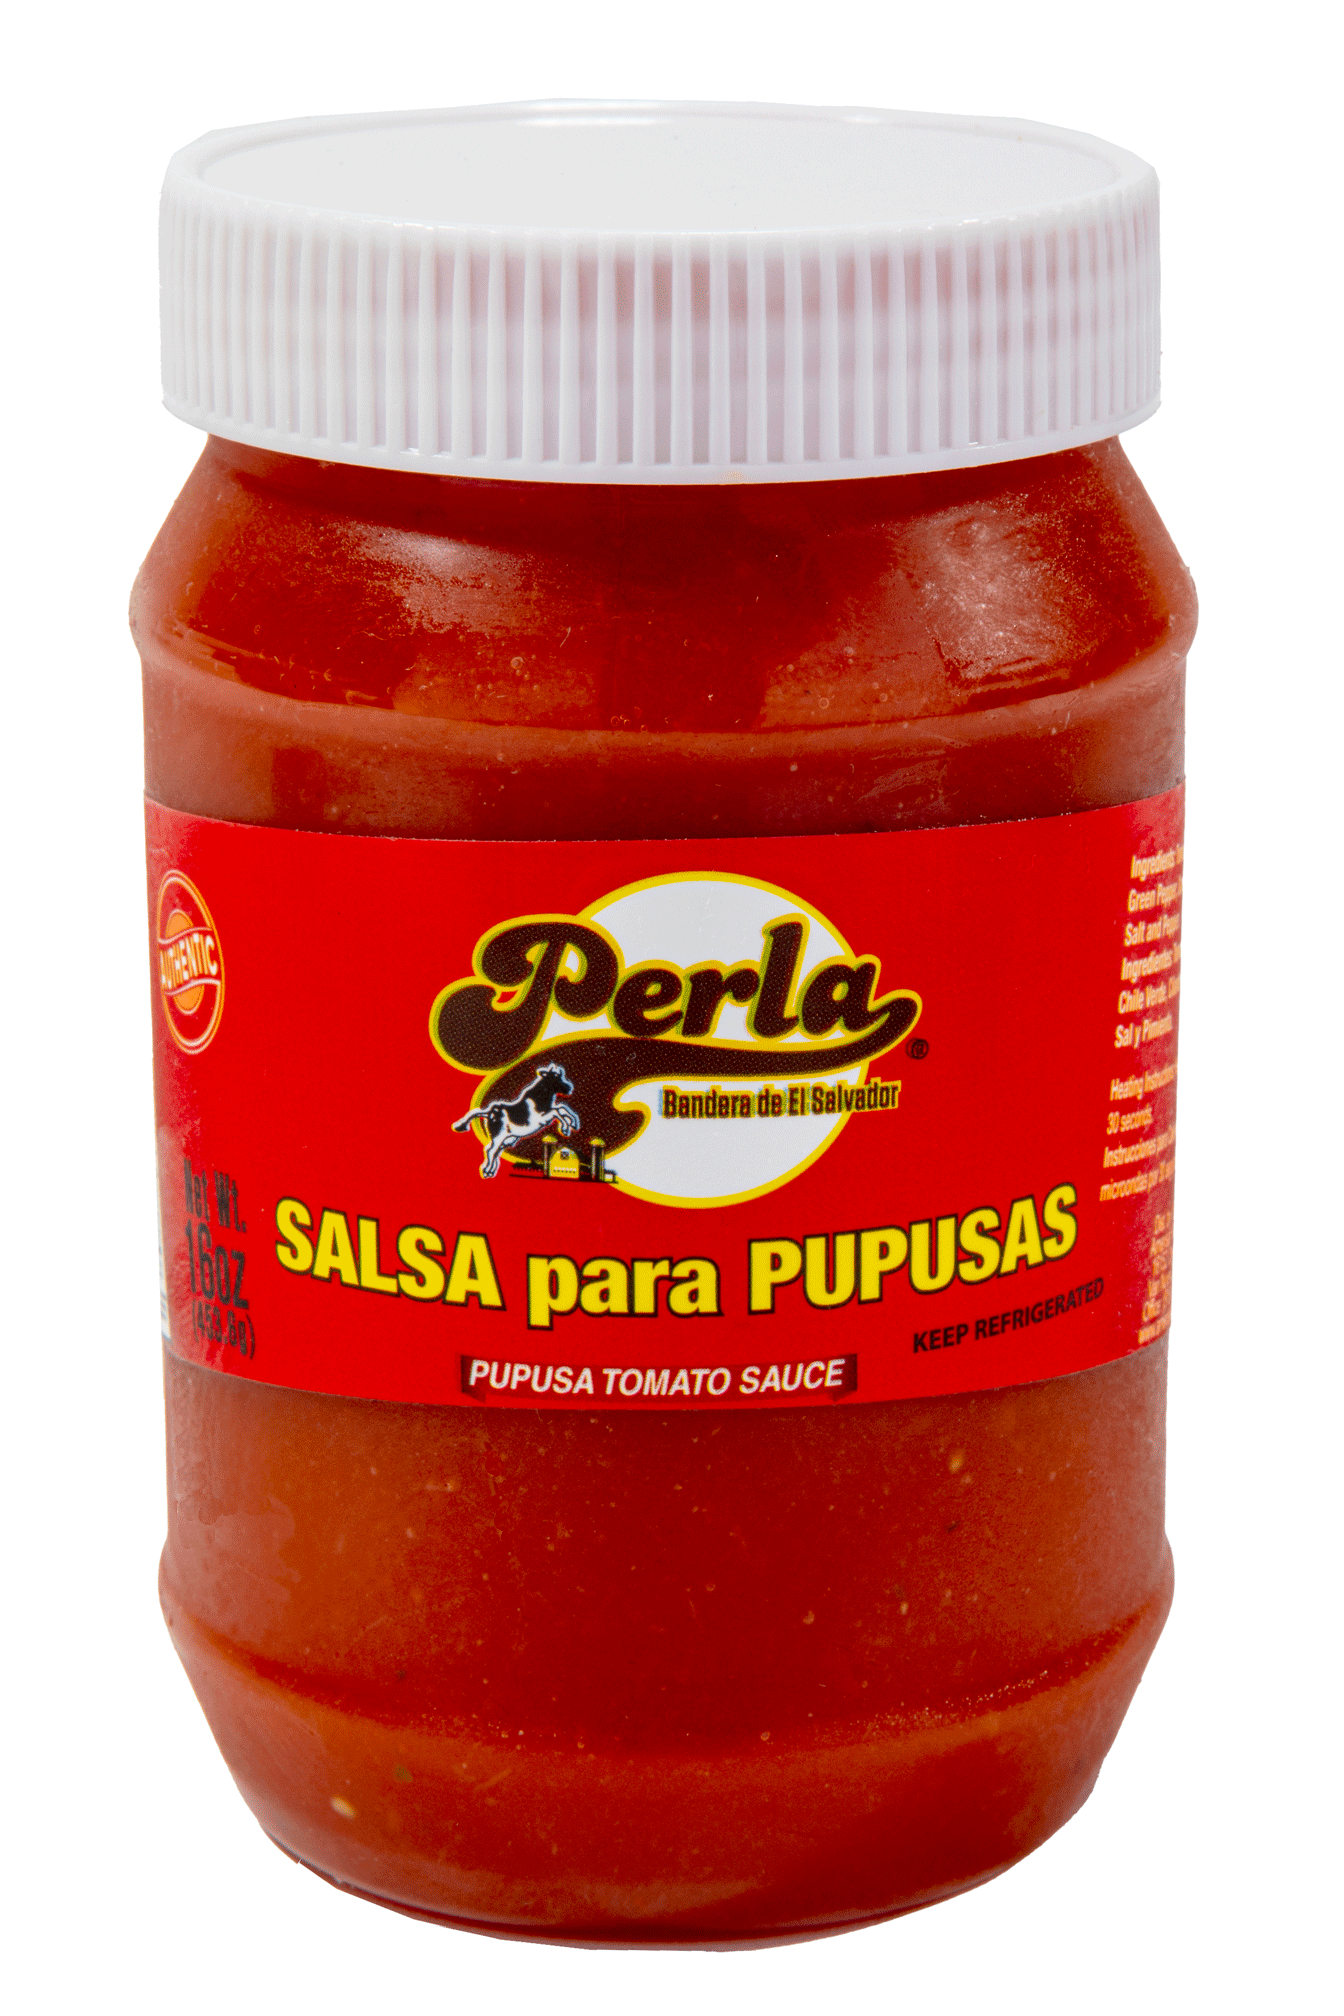 Perla 16oz Salsa para Pupusas  (Tomato Sauce for Pupusas)